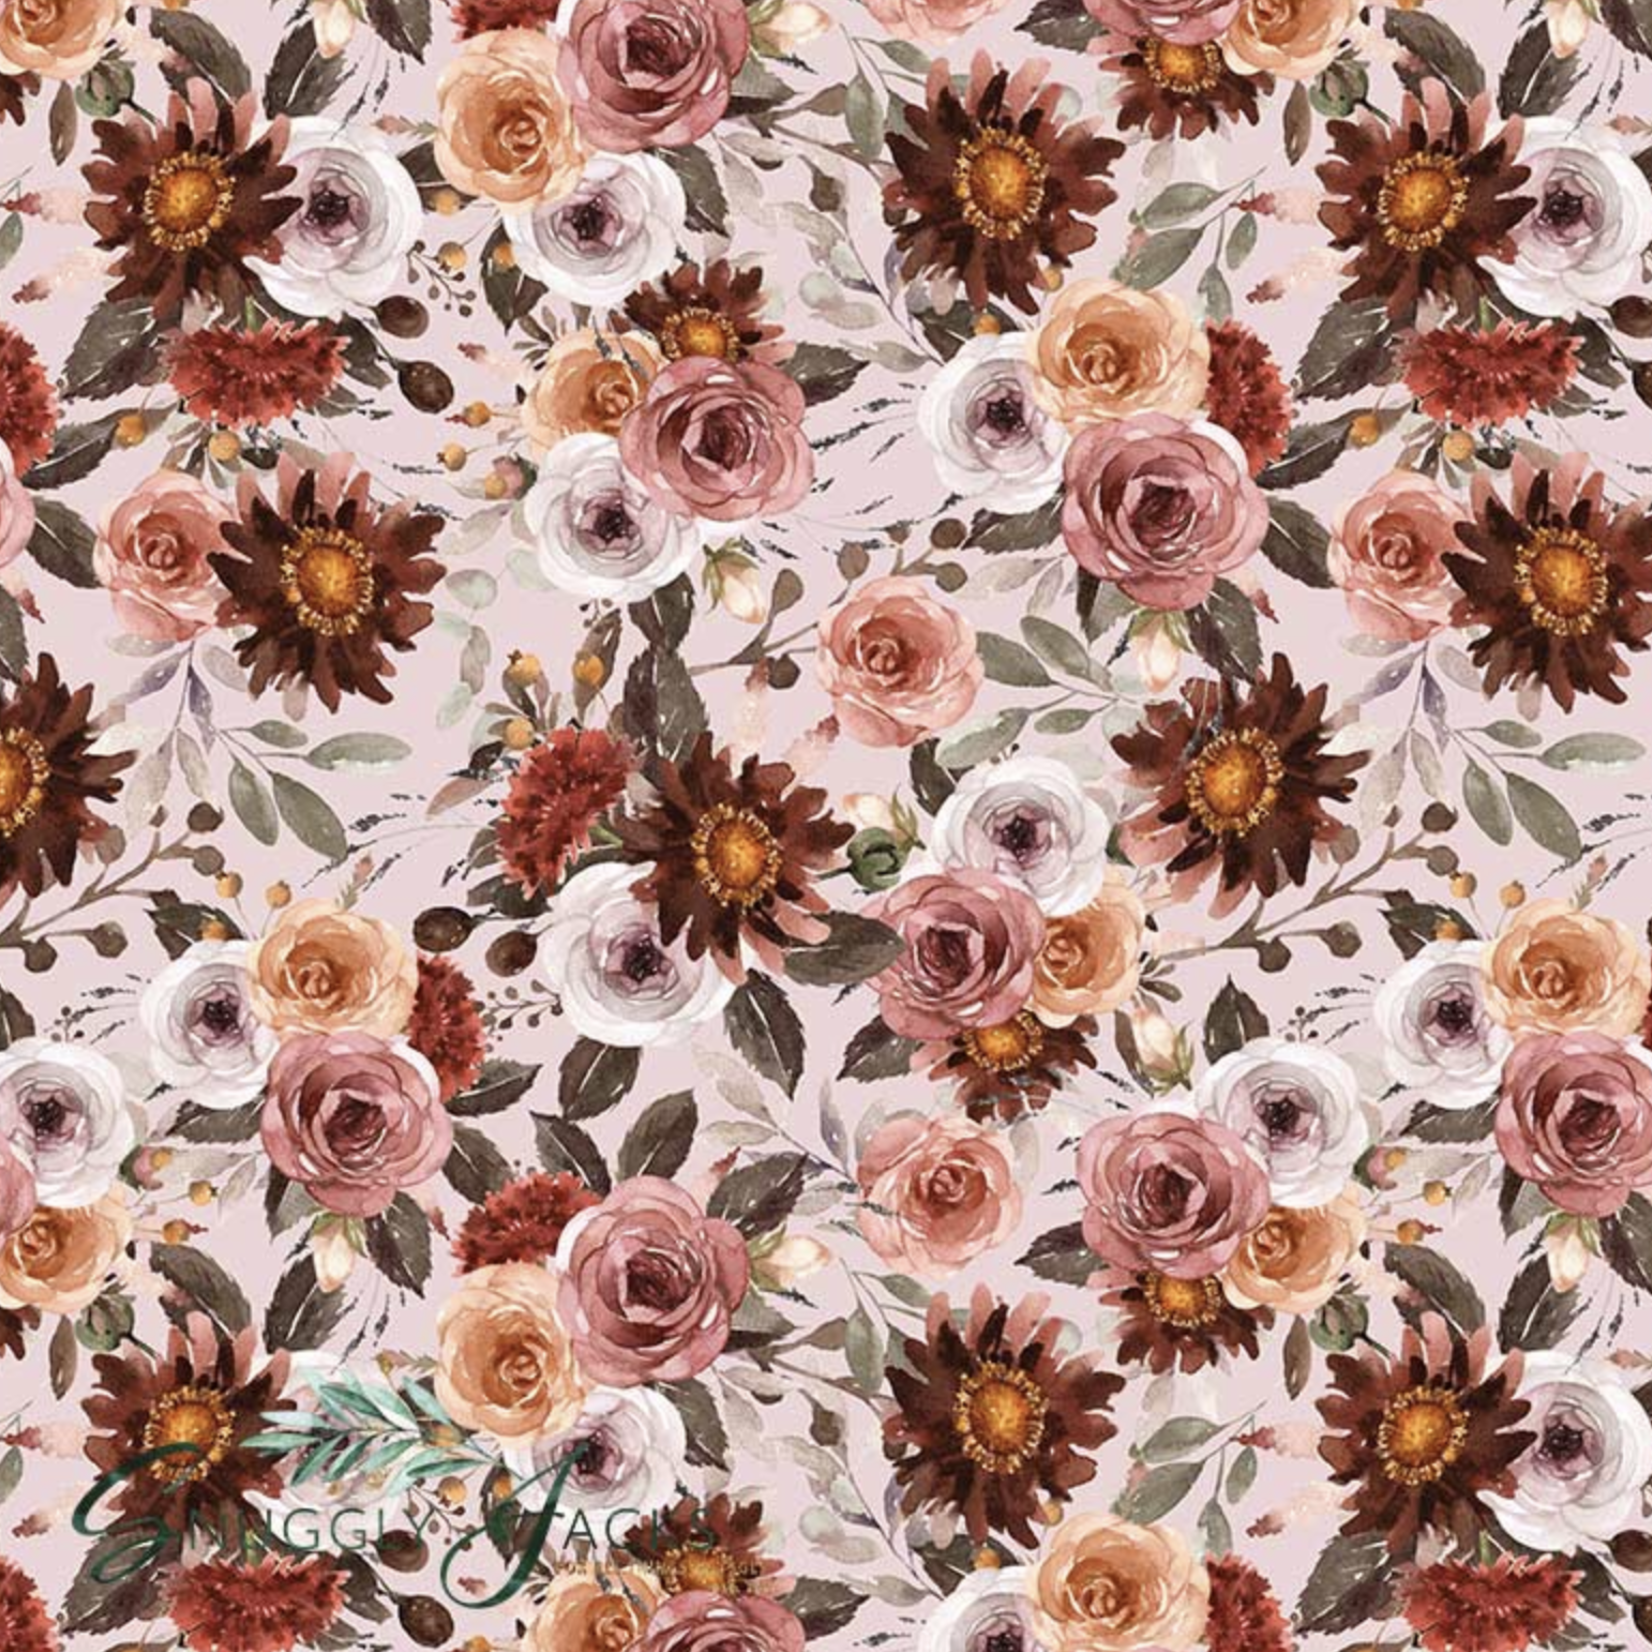 Snuggly Jacks Blithe Floral Bassinet Sheet / Change Mat Cover